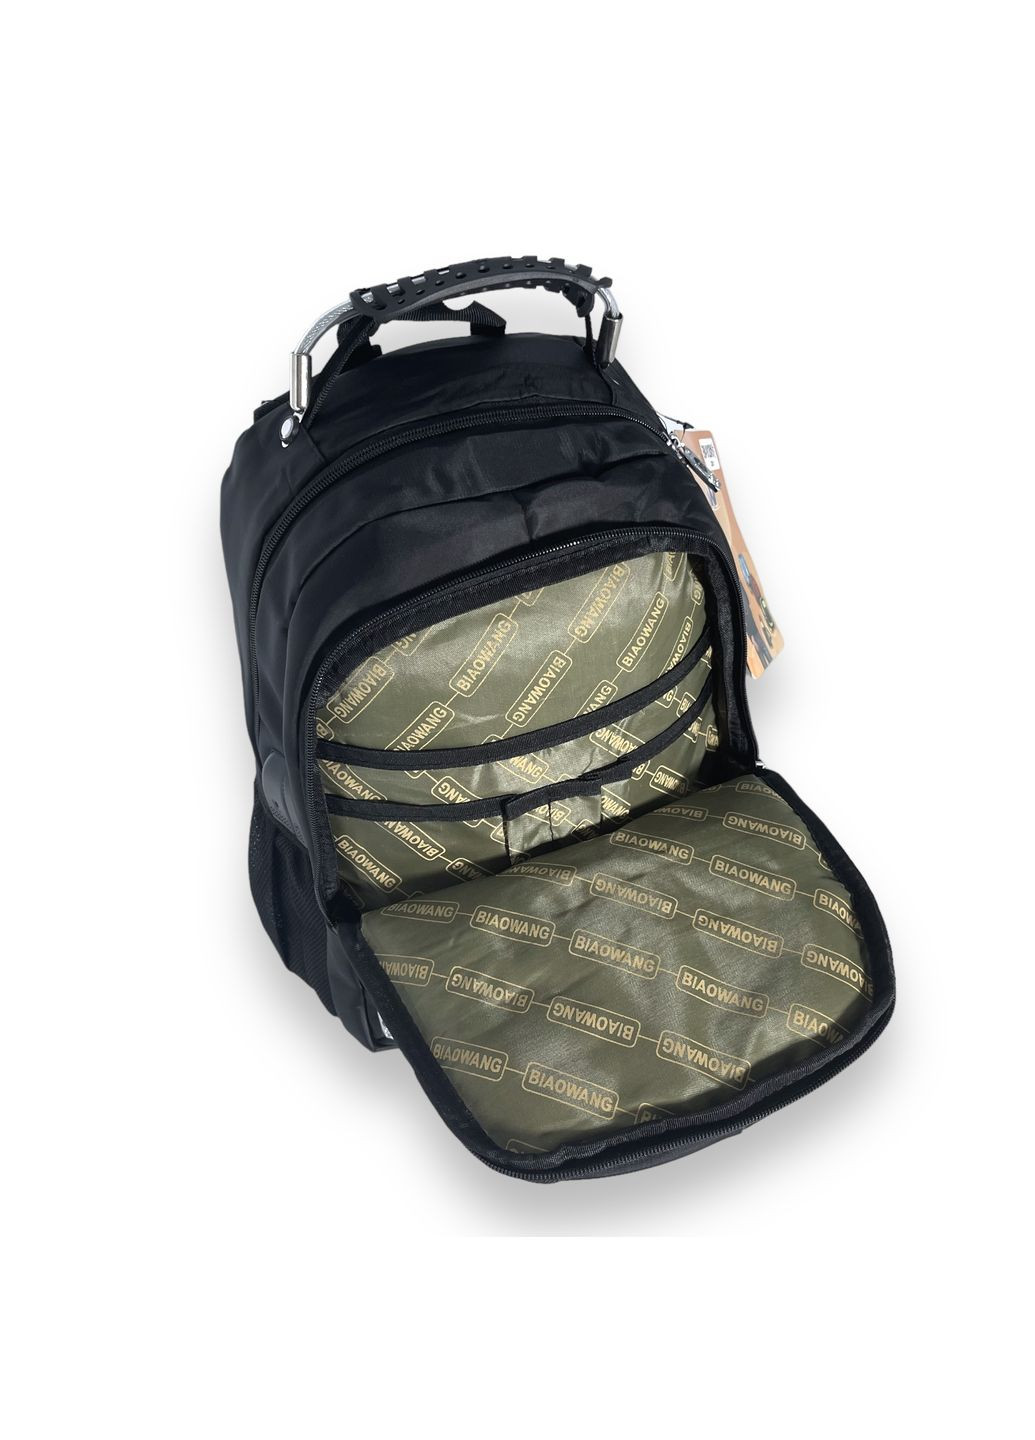 Рюкзак міський, 15 л, два відділення, фронтальні кишені, USB+2 кабелі, розмір 37*27*15см, чорний Biao Wang (285814738)